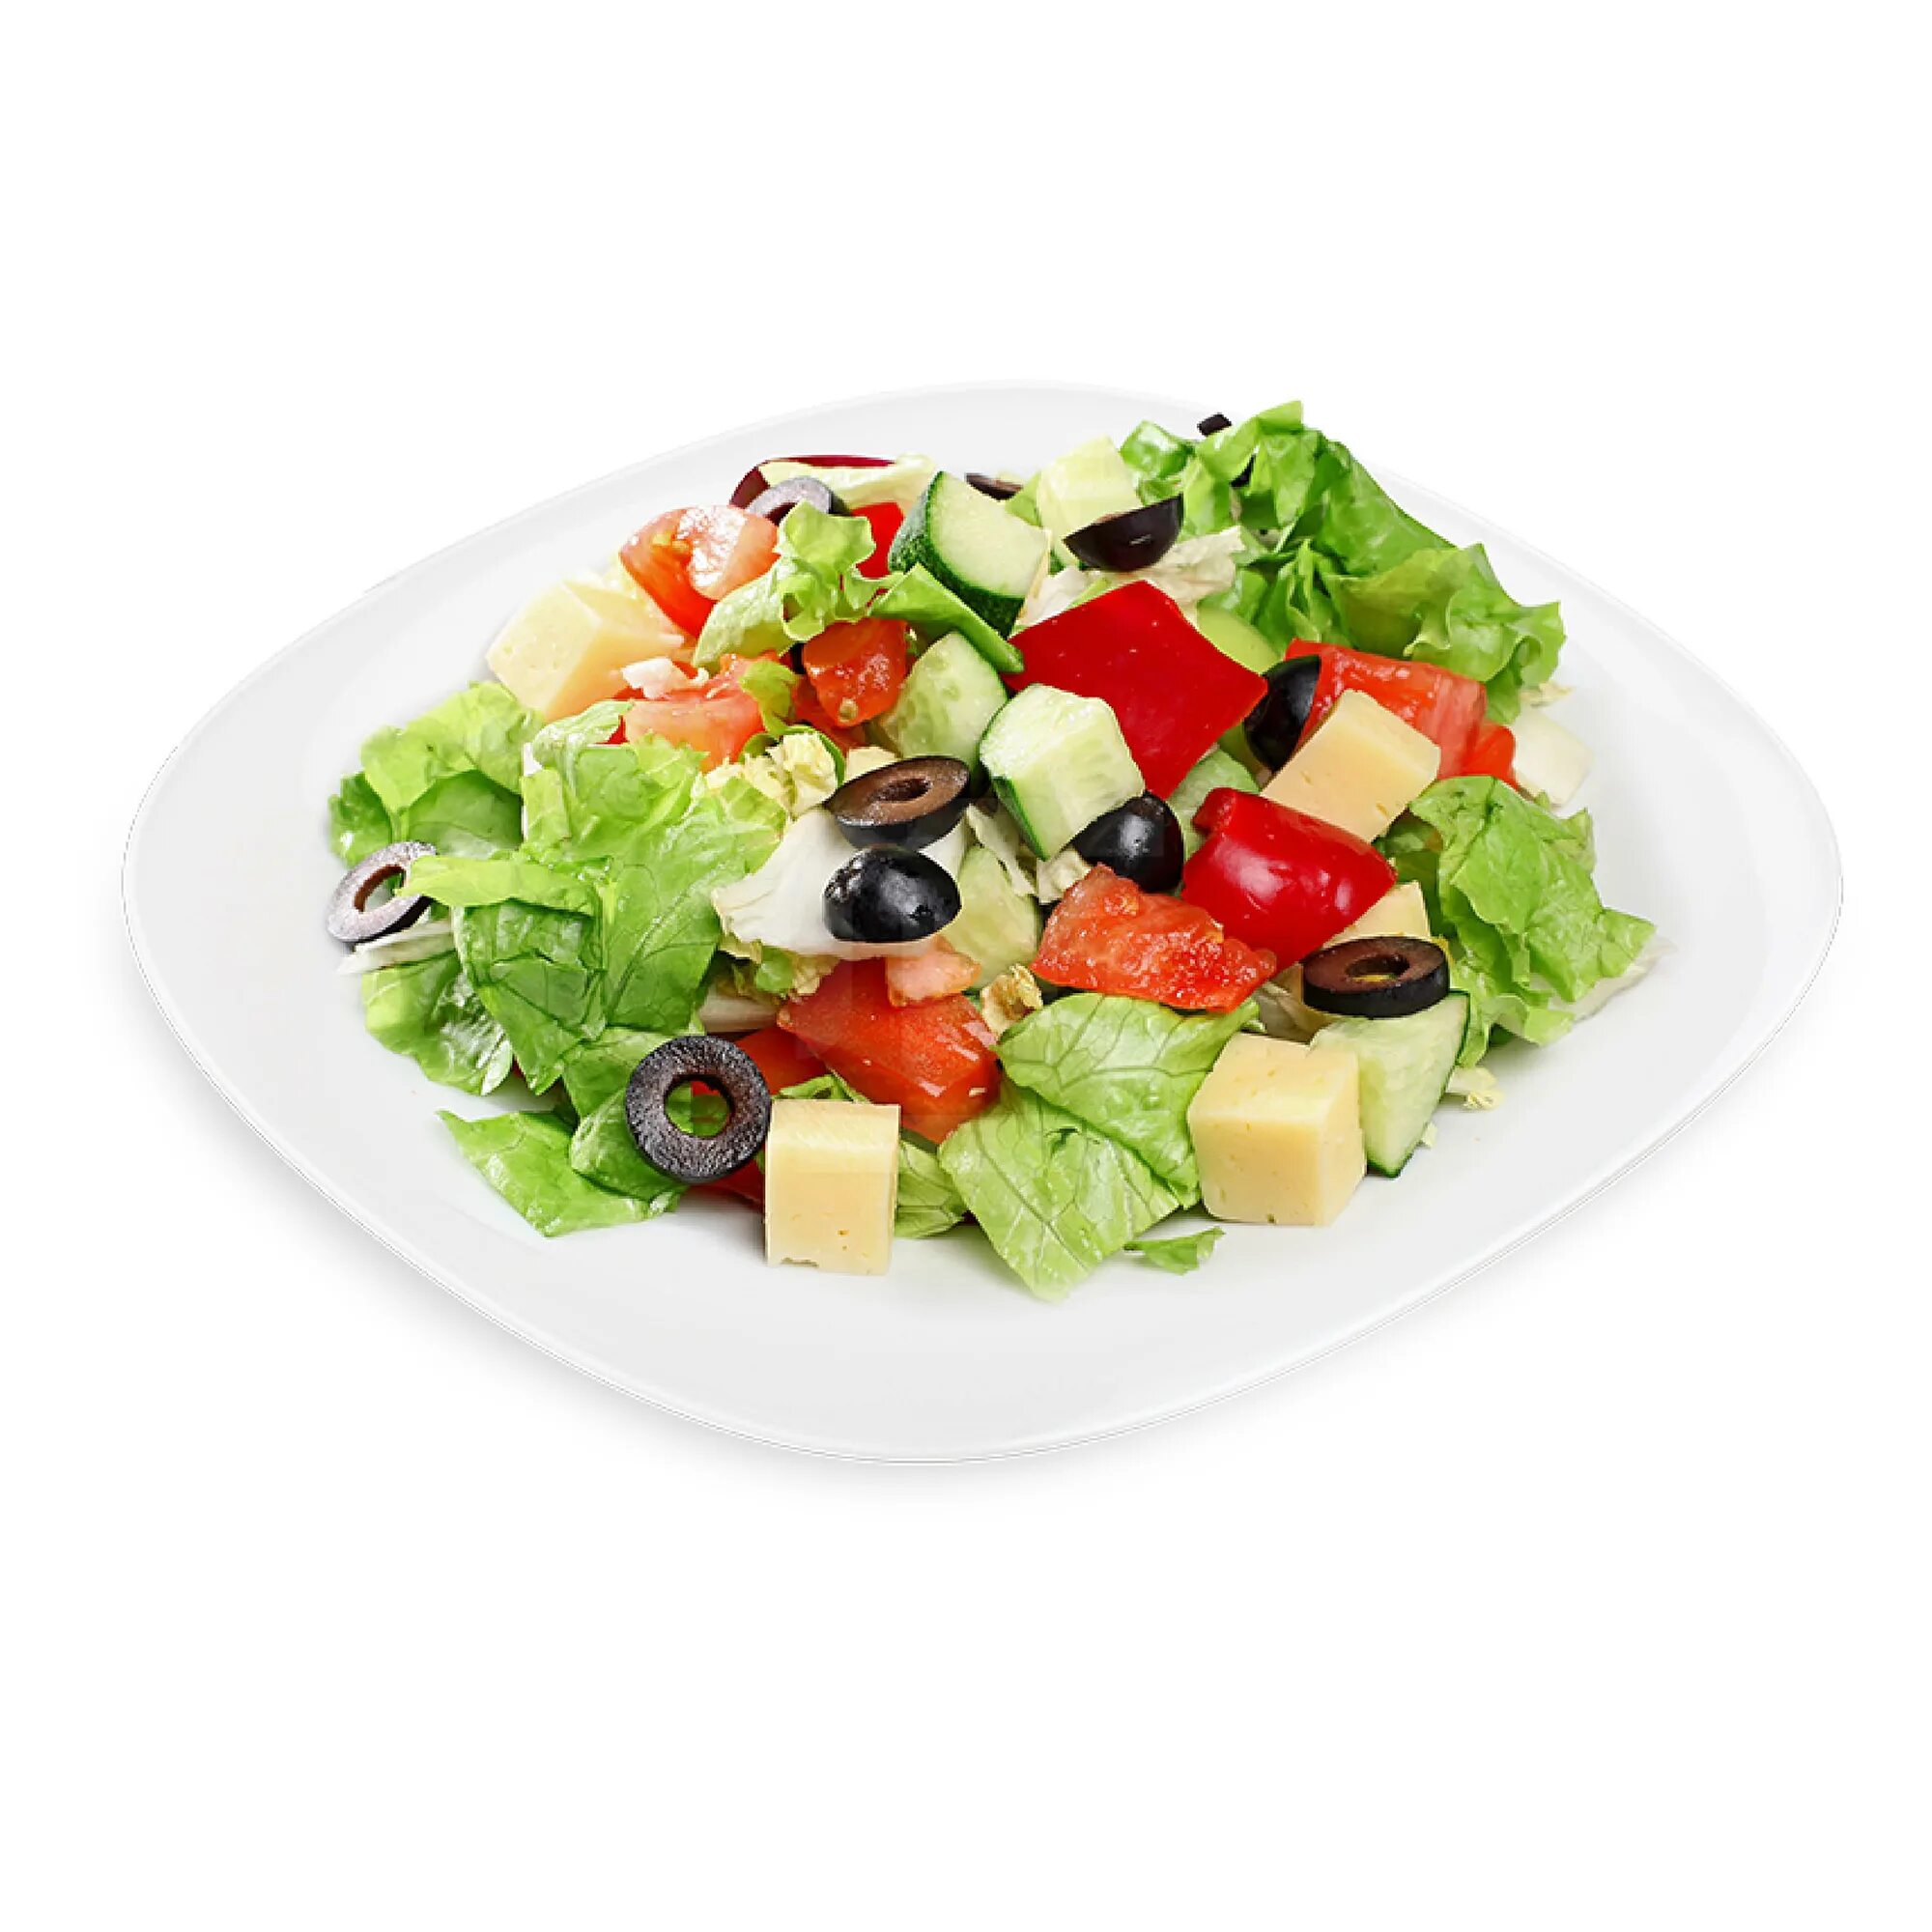 Купить салаты с доставкой. Греческий салат. Салат греческий на белом фоне. Салат на белой тарелке. Салат греческий классический.